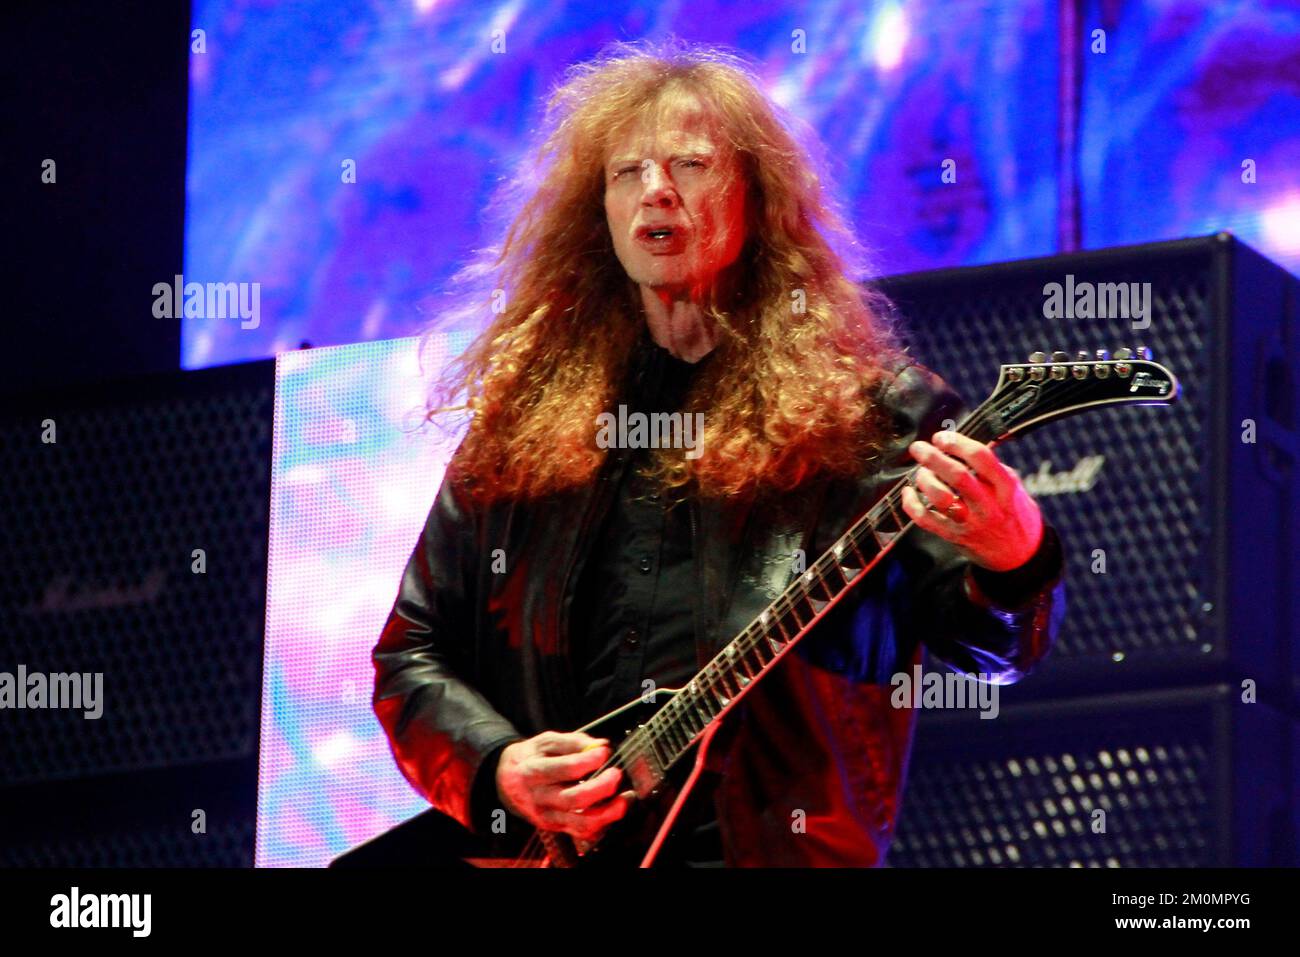 El guitarrista Dave Mustaine de la banda Megadeth American thrash metal  actúa en el escenario durante el tercer día de The Hell and Heaven Metal  Fest en Foro Pegaso. El 04 de